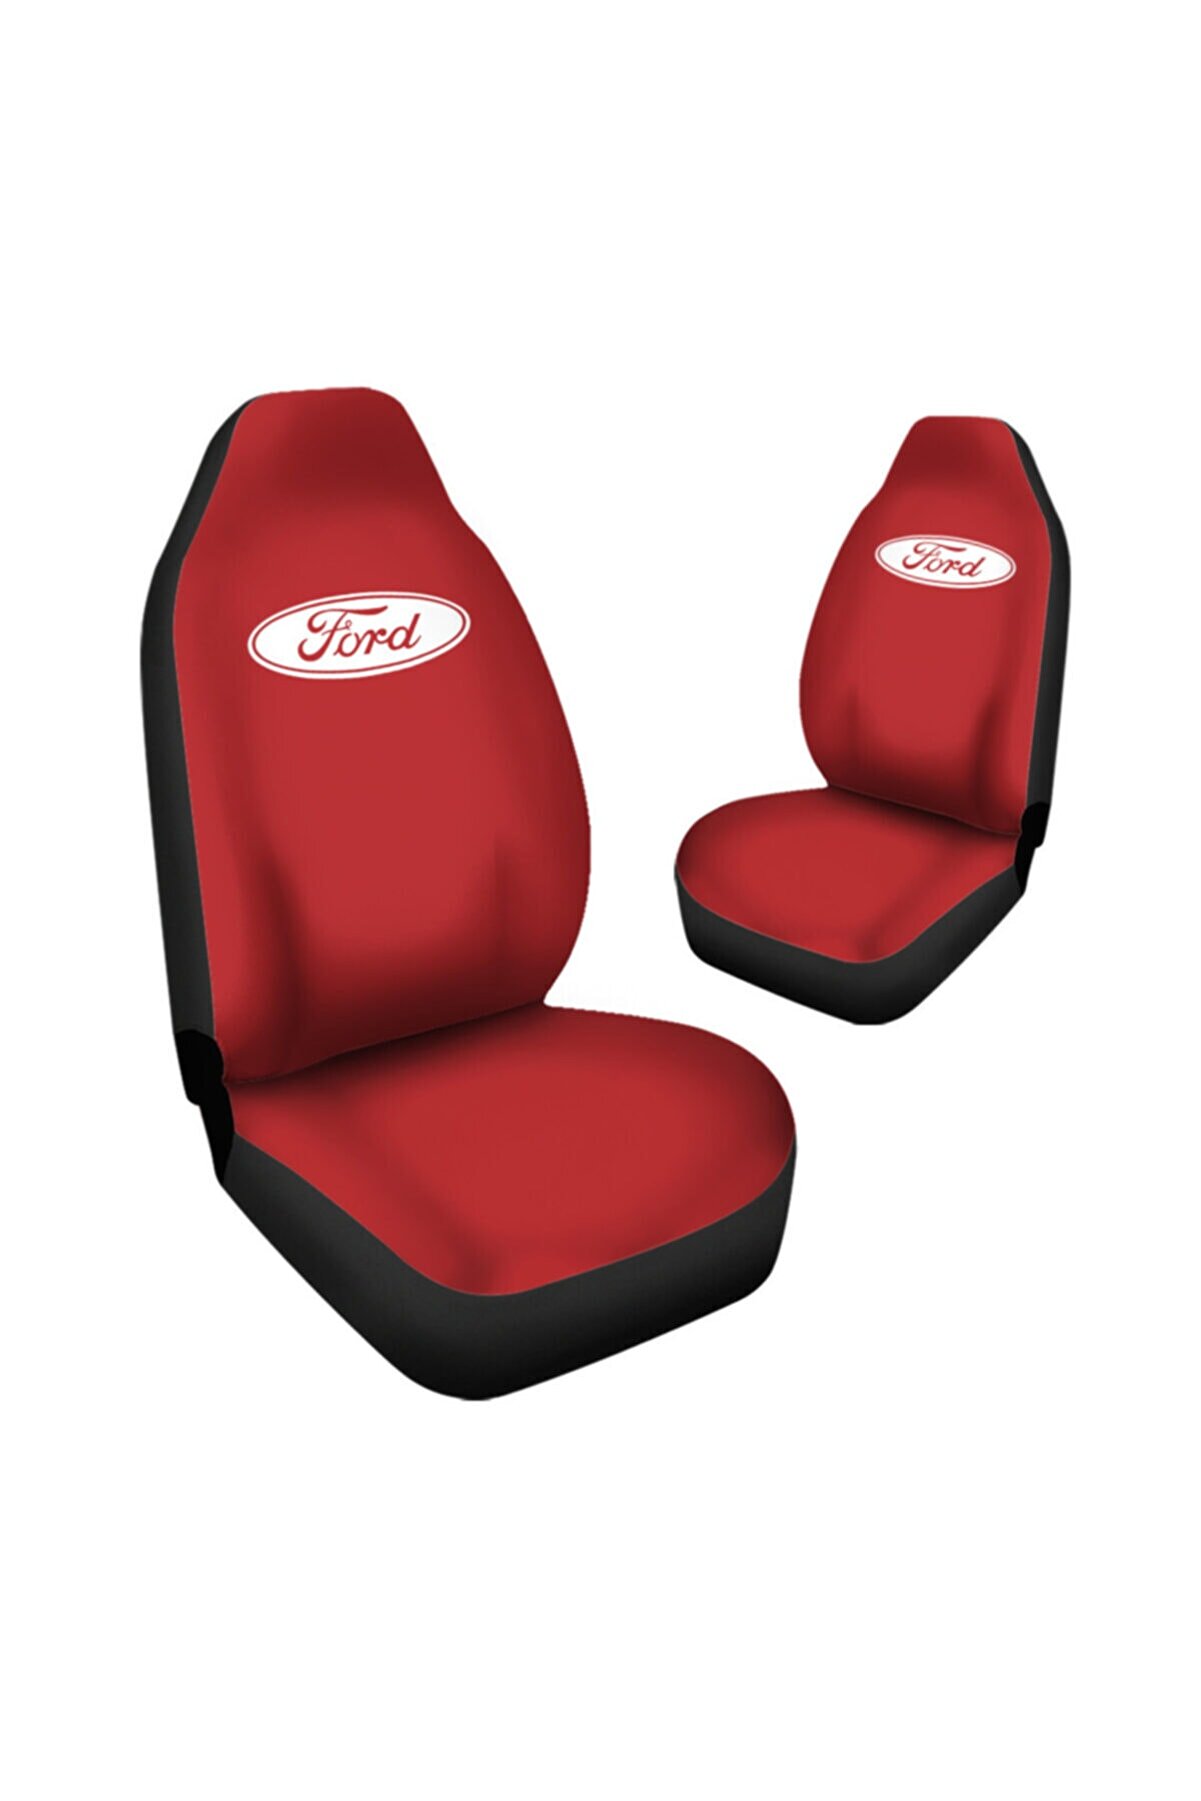 Antwax Ford Focus Araca Özel Oto Koltuk Kılıfı Pro - Kırmızı ( Yeni Tasarım - Yeni Fit Kalıp )